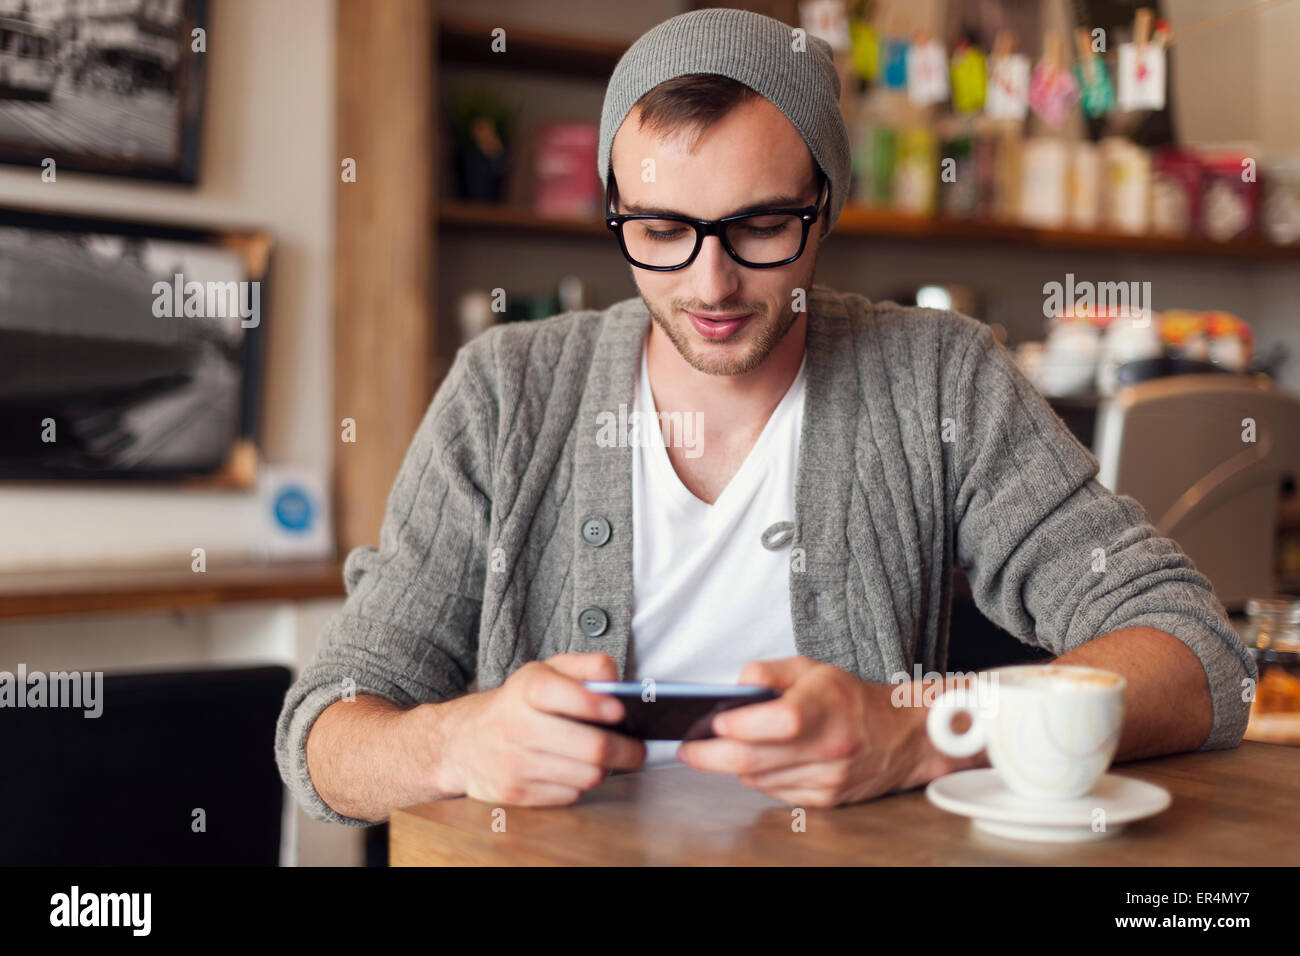 Stylish man enjoying the free internet at cafe. Krakow, Poland Stock Photo